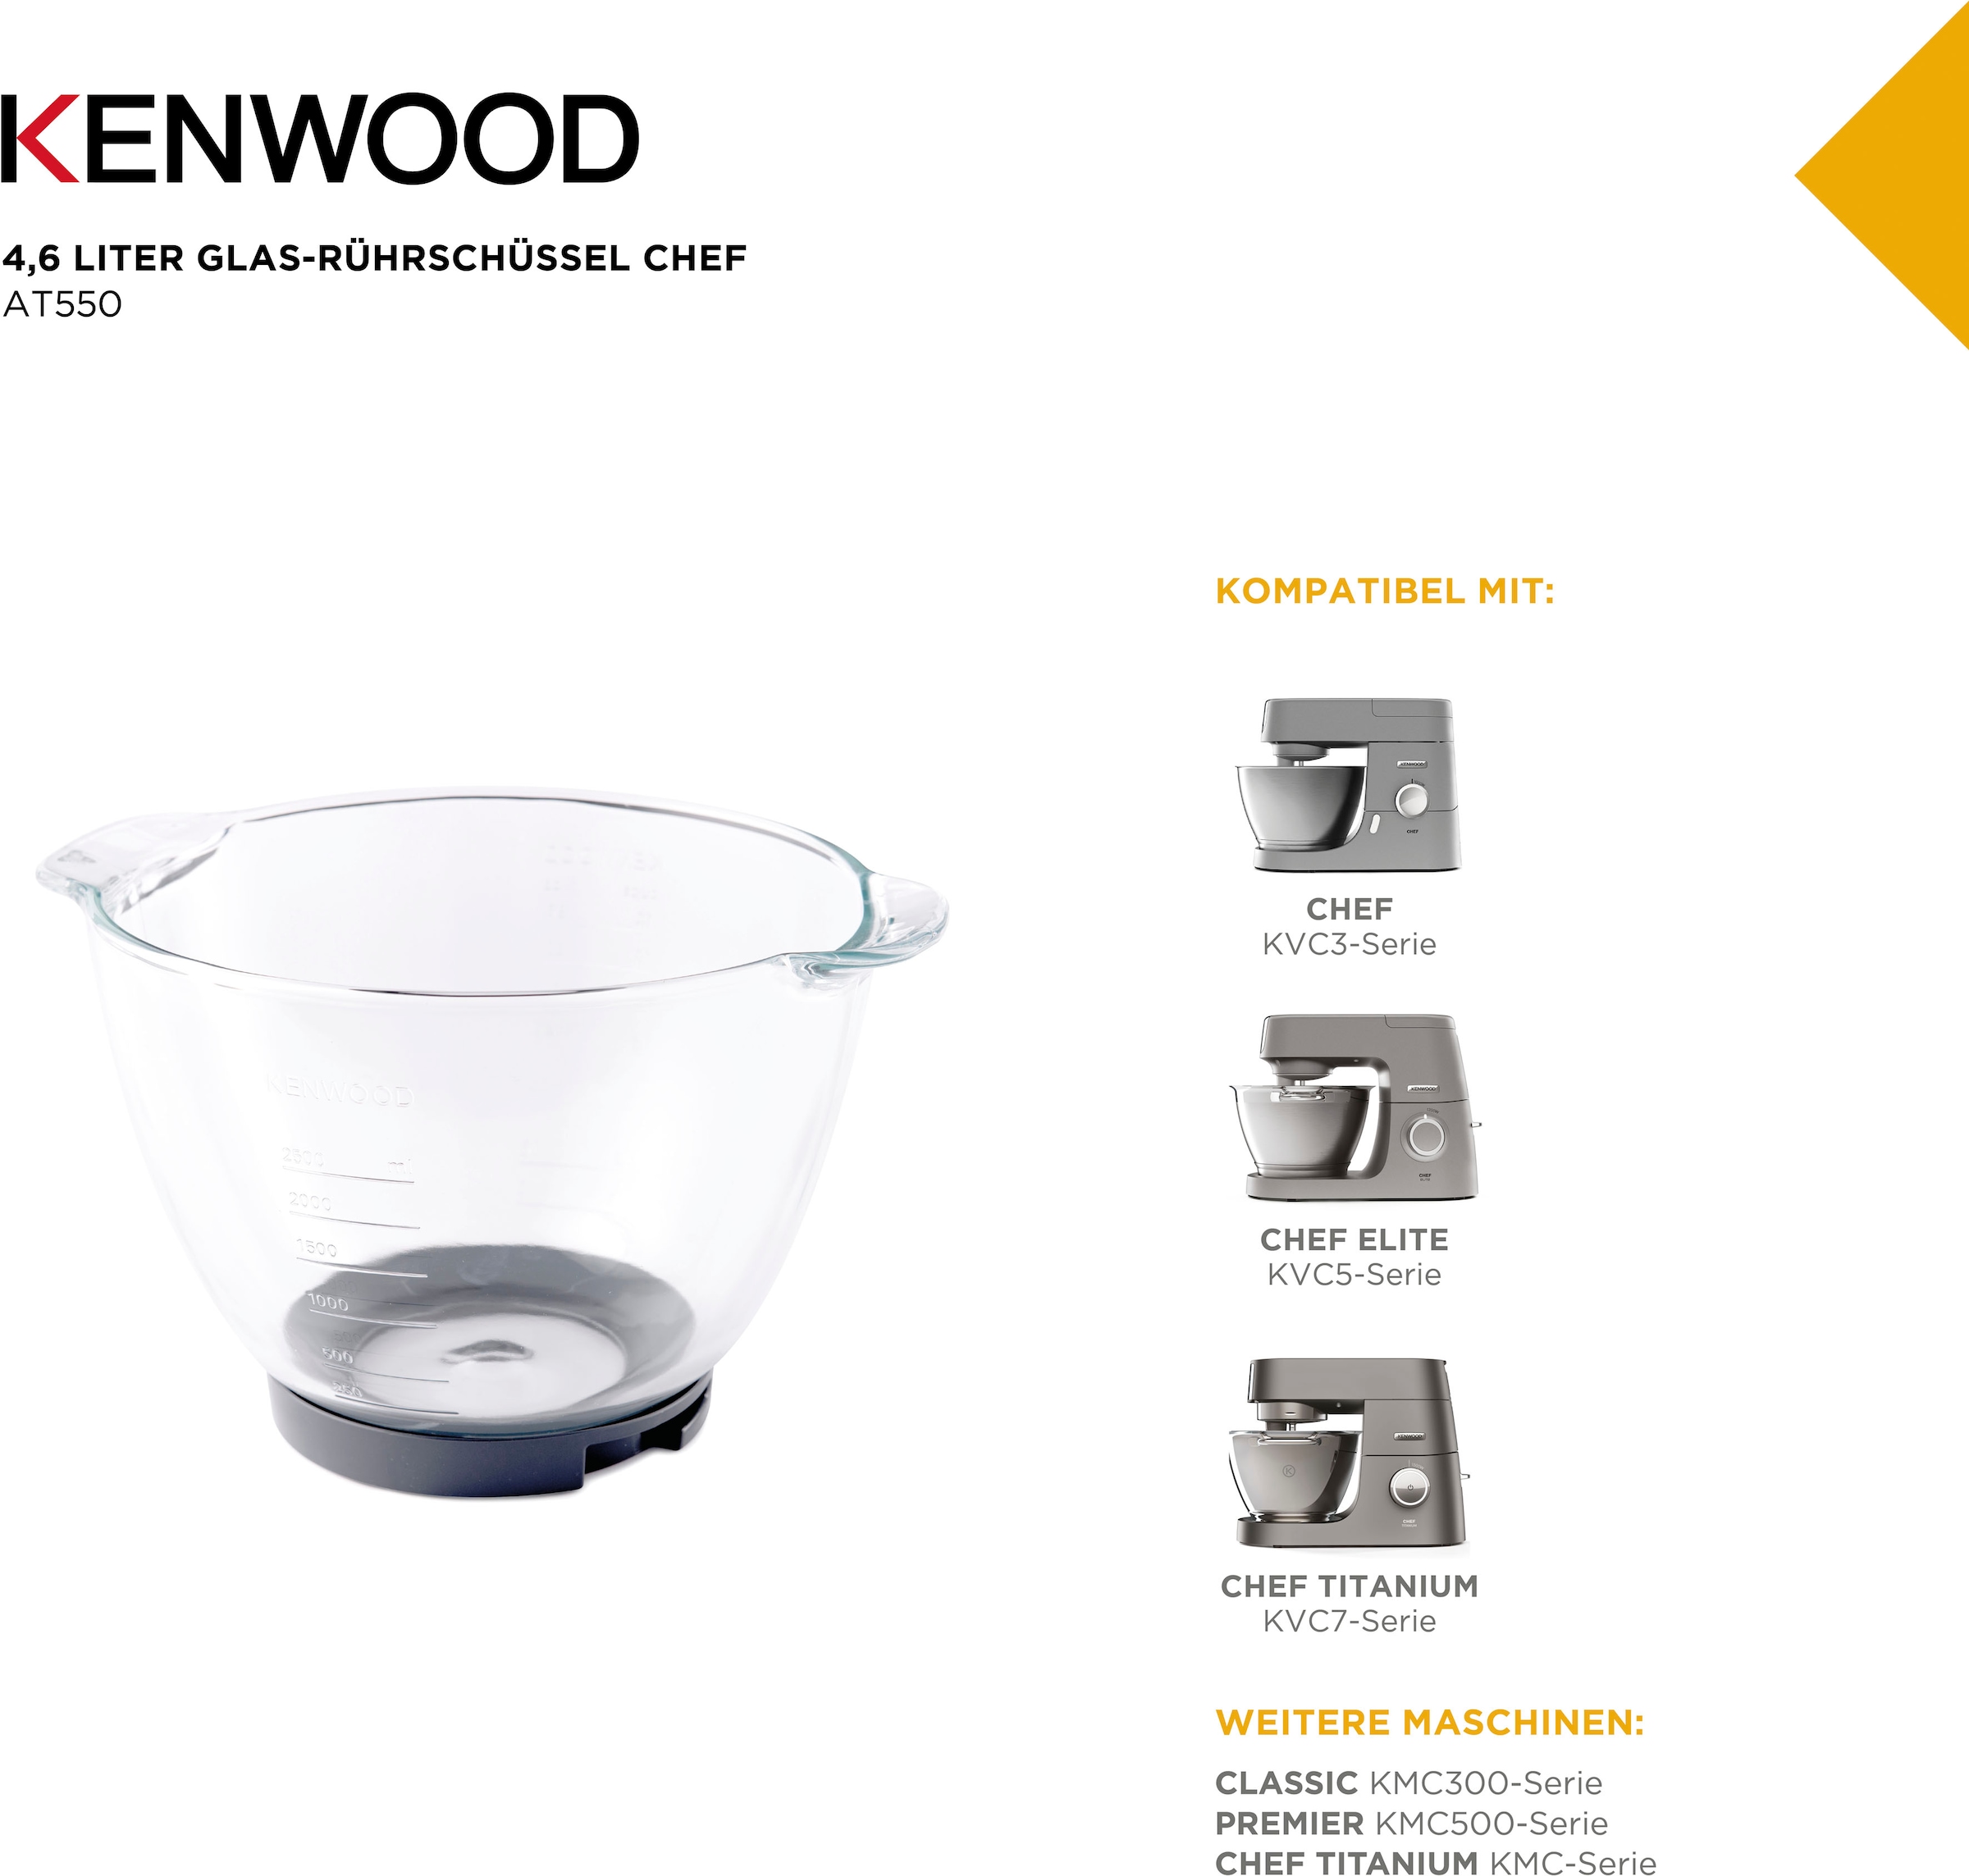 KENWOOD Küchenmaschinenschüssel »Chef Glas-Rührschüssel AT550«, aus Glas, Kompatibel mit: KVC3-Serie, Elite KVC5-Serie, Titanium KVC7-Serie